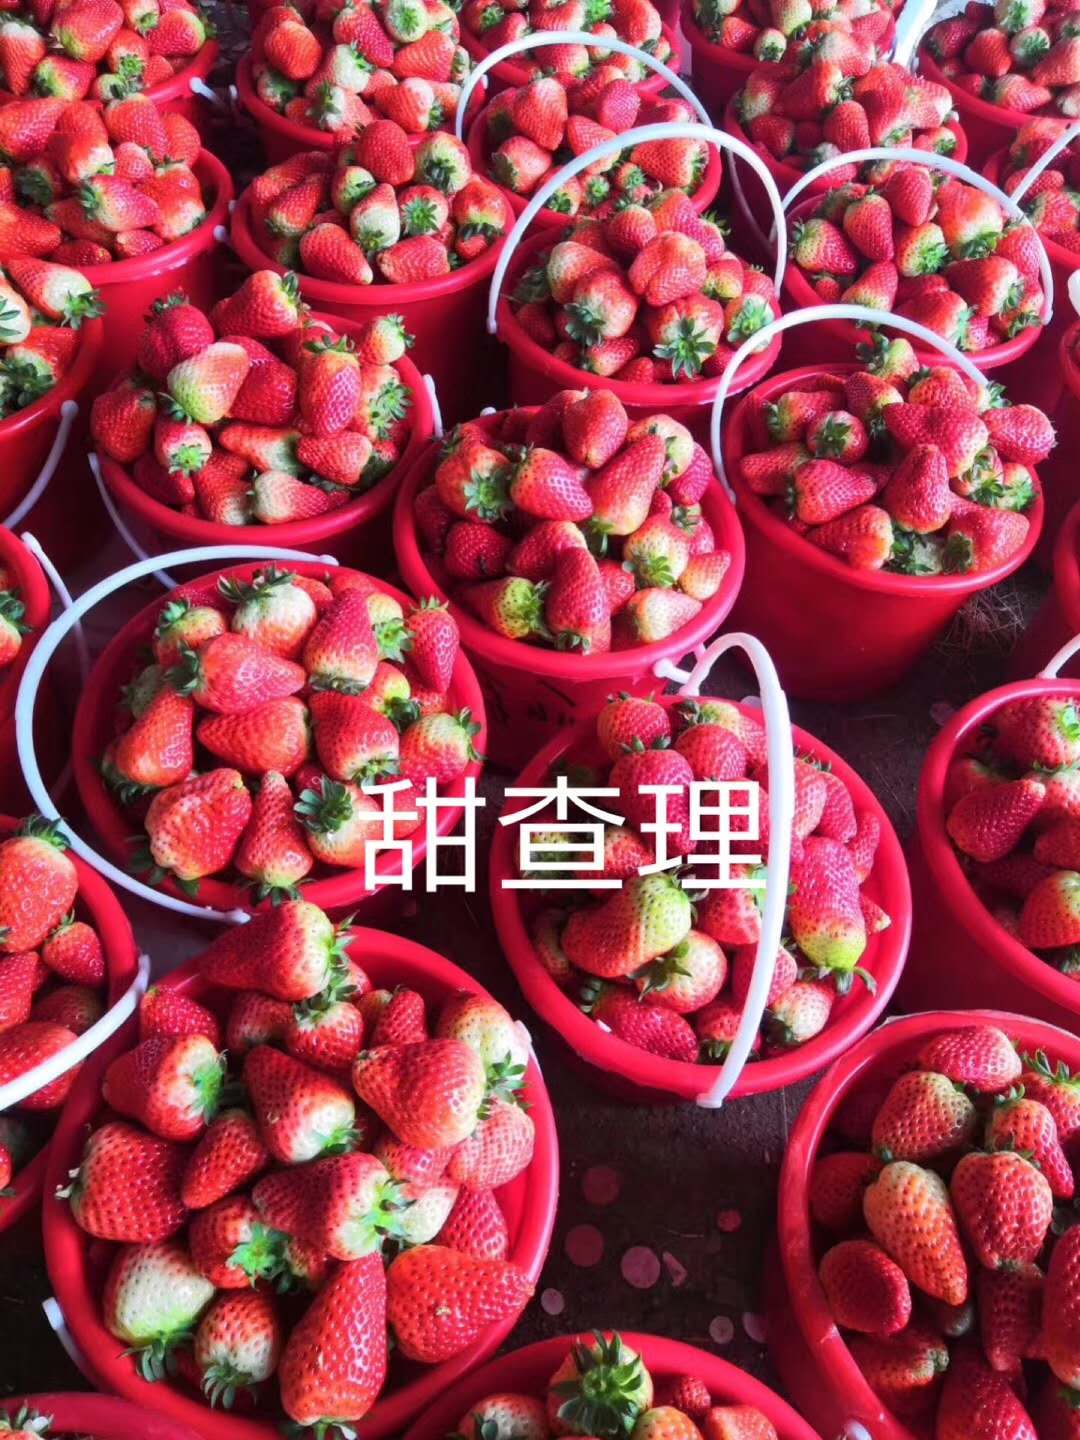 天仙醉草莓苗品种天仙醉草莓苗产地